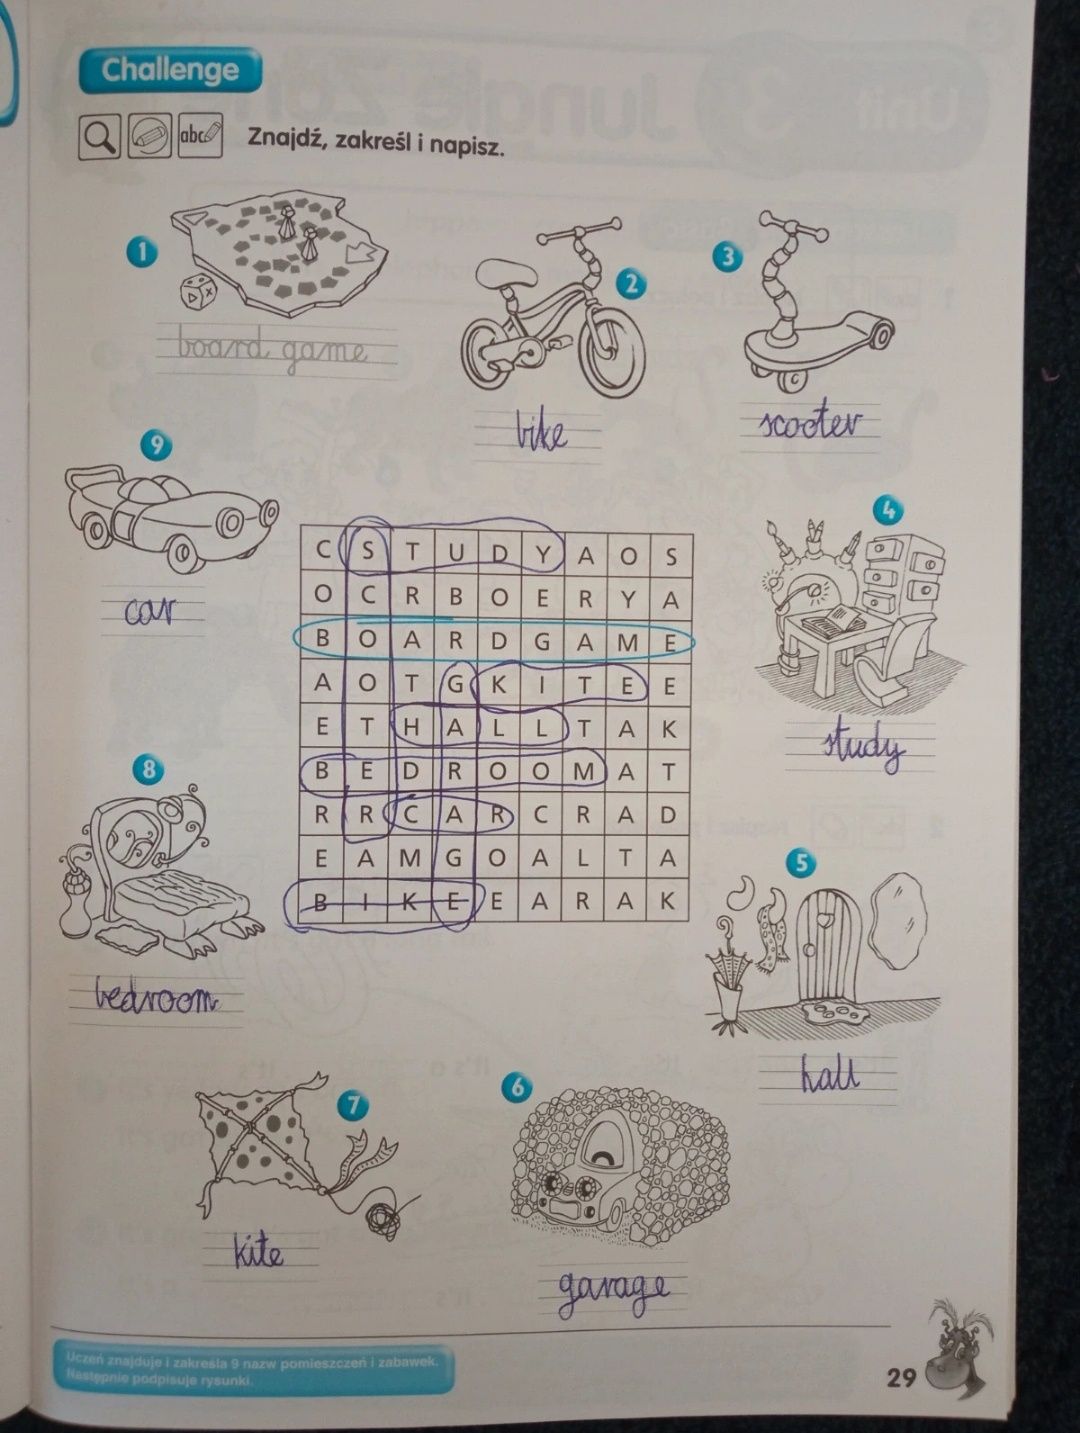 Zestaw English Quest 2 podręcznik i ćwiczenia + płyty